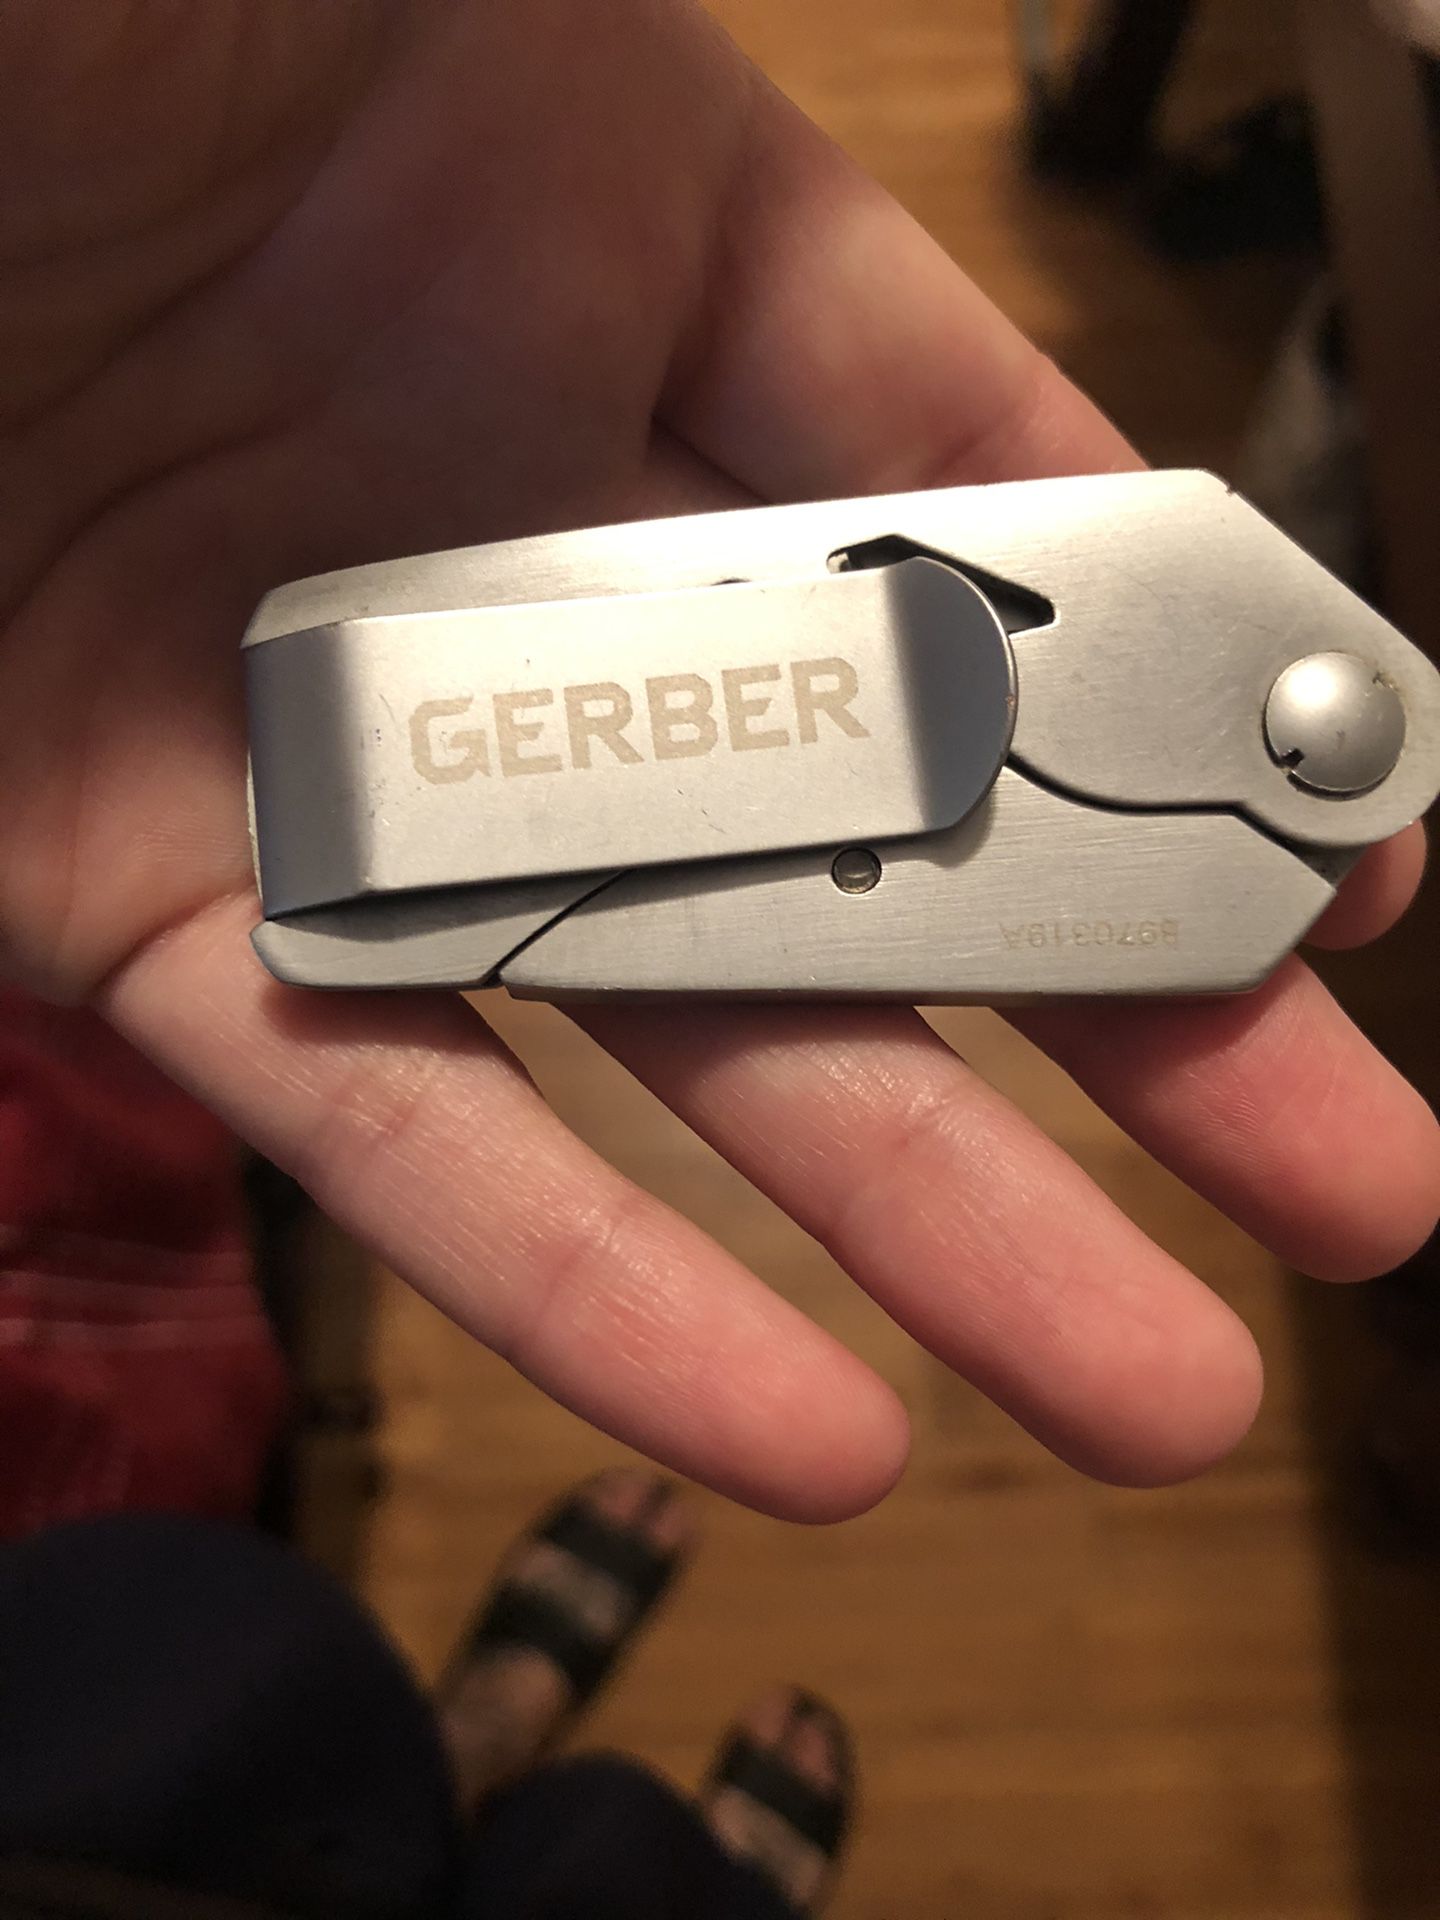 Gerber box tool